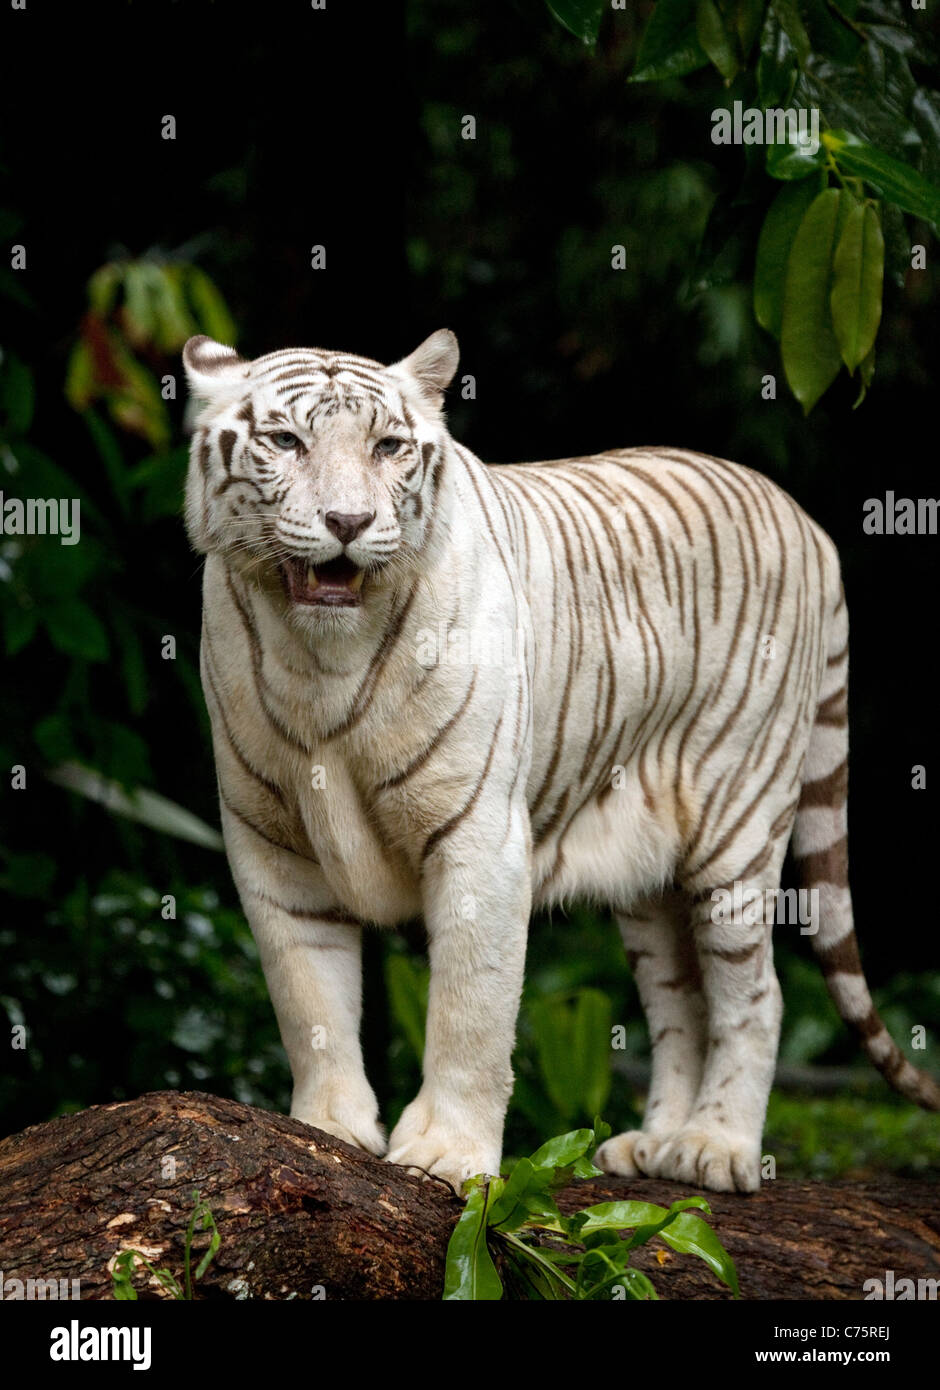 A white tiger standing (Panthera Tigris) in Singapore Zoo, Singapore, Asia Stock Photo